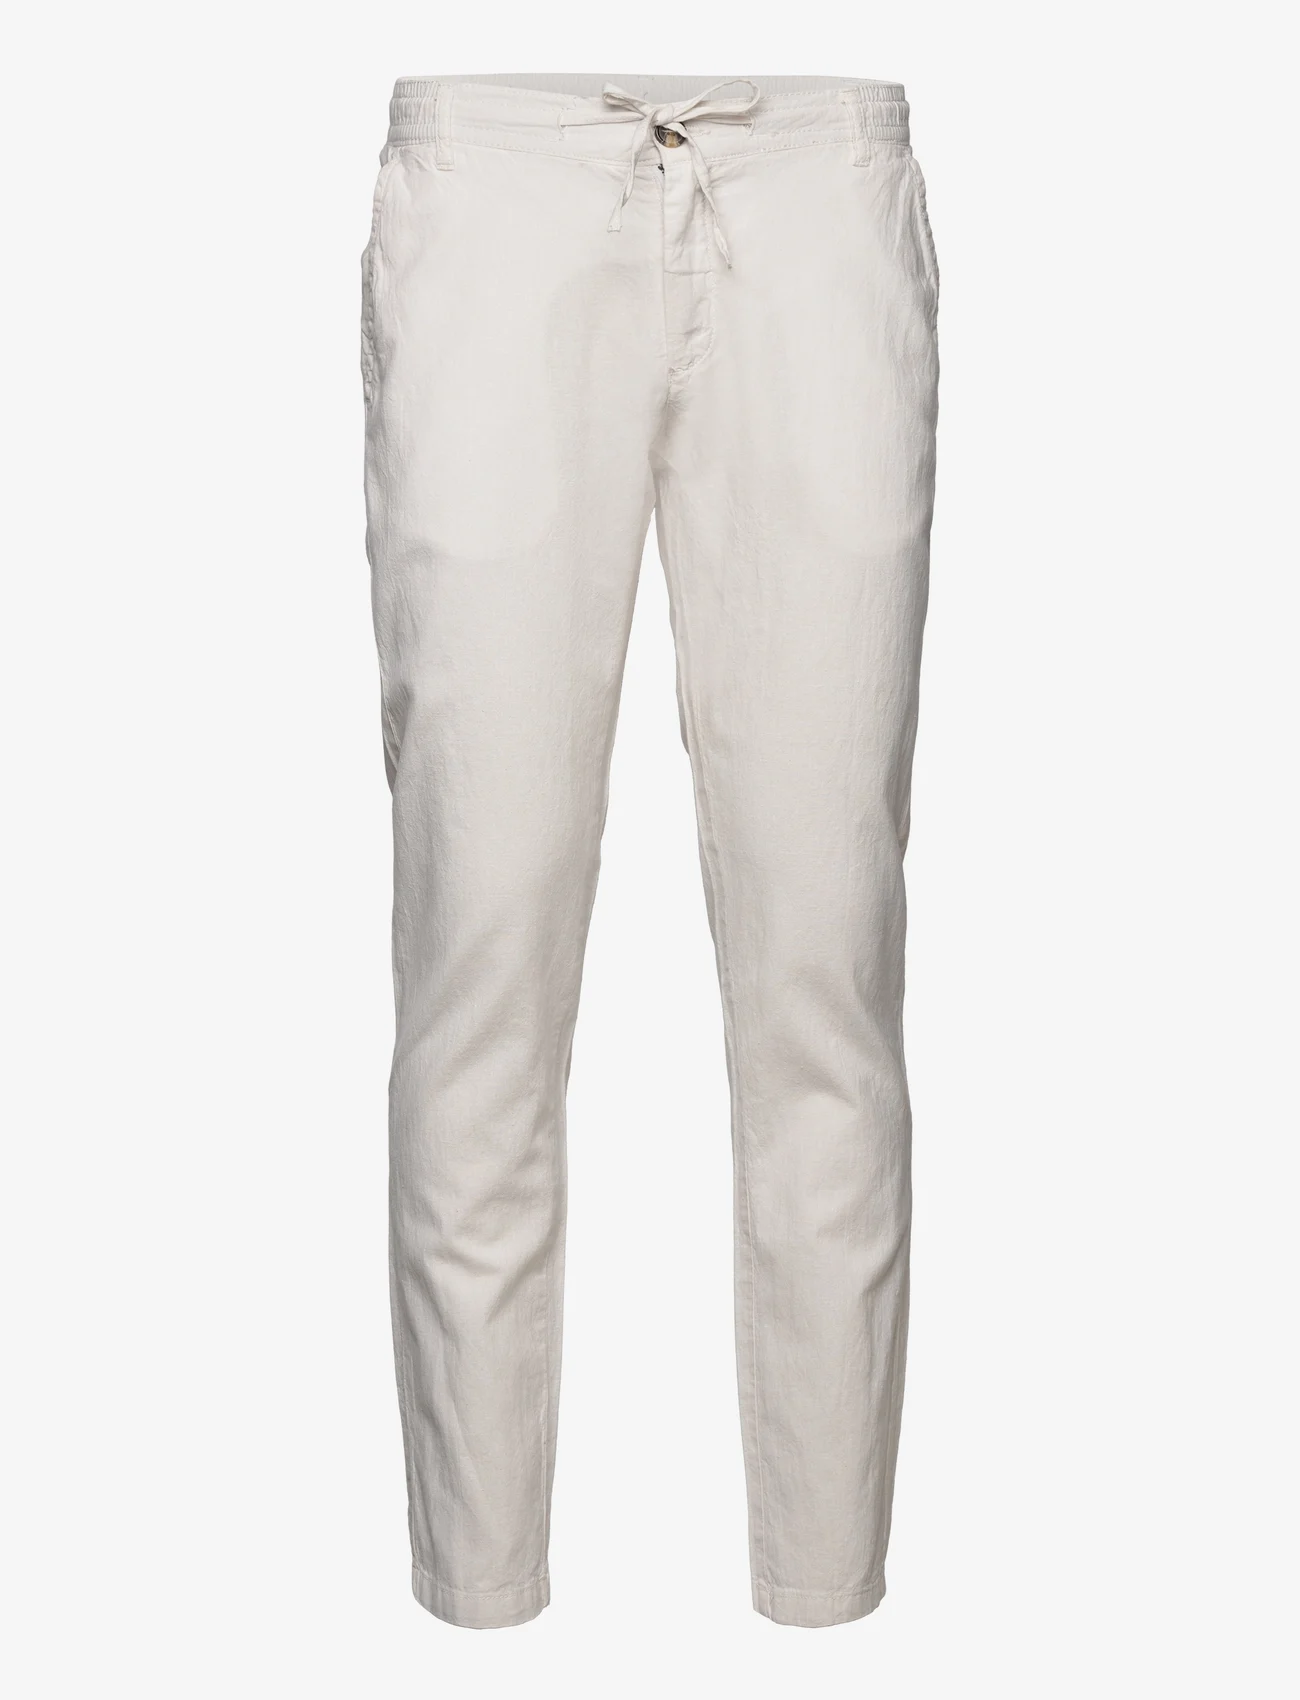 Lindbergh - Linen pants - spodnie lniane - white - 0